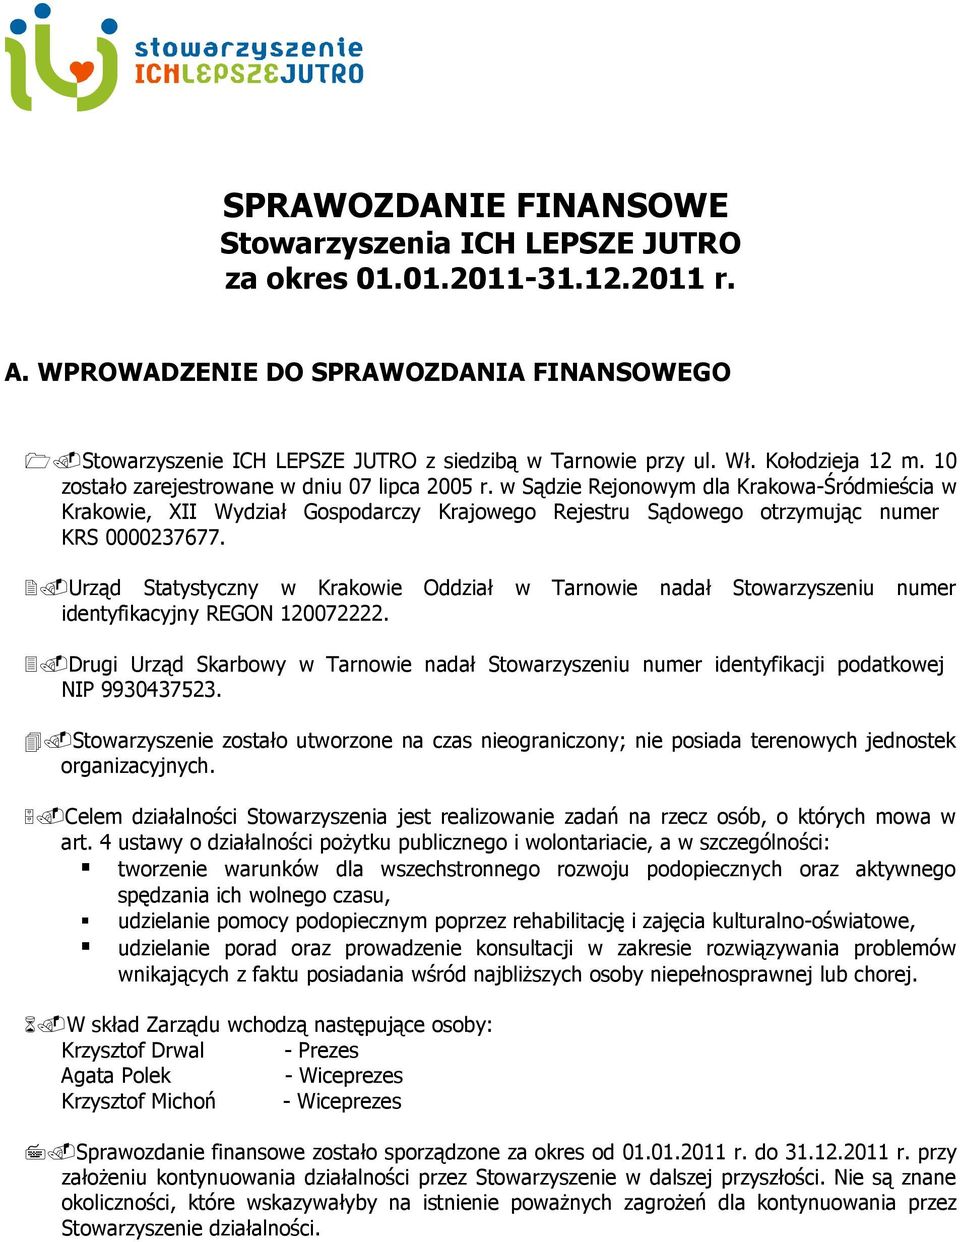 w Sądzie Rejonowym dla Krakowa-Śródmieścia w Krakowie, XII Wydział Gospodarczy Krajowego Rejestru Sądowego otrzymując numer KRS 0000237677.